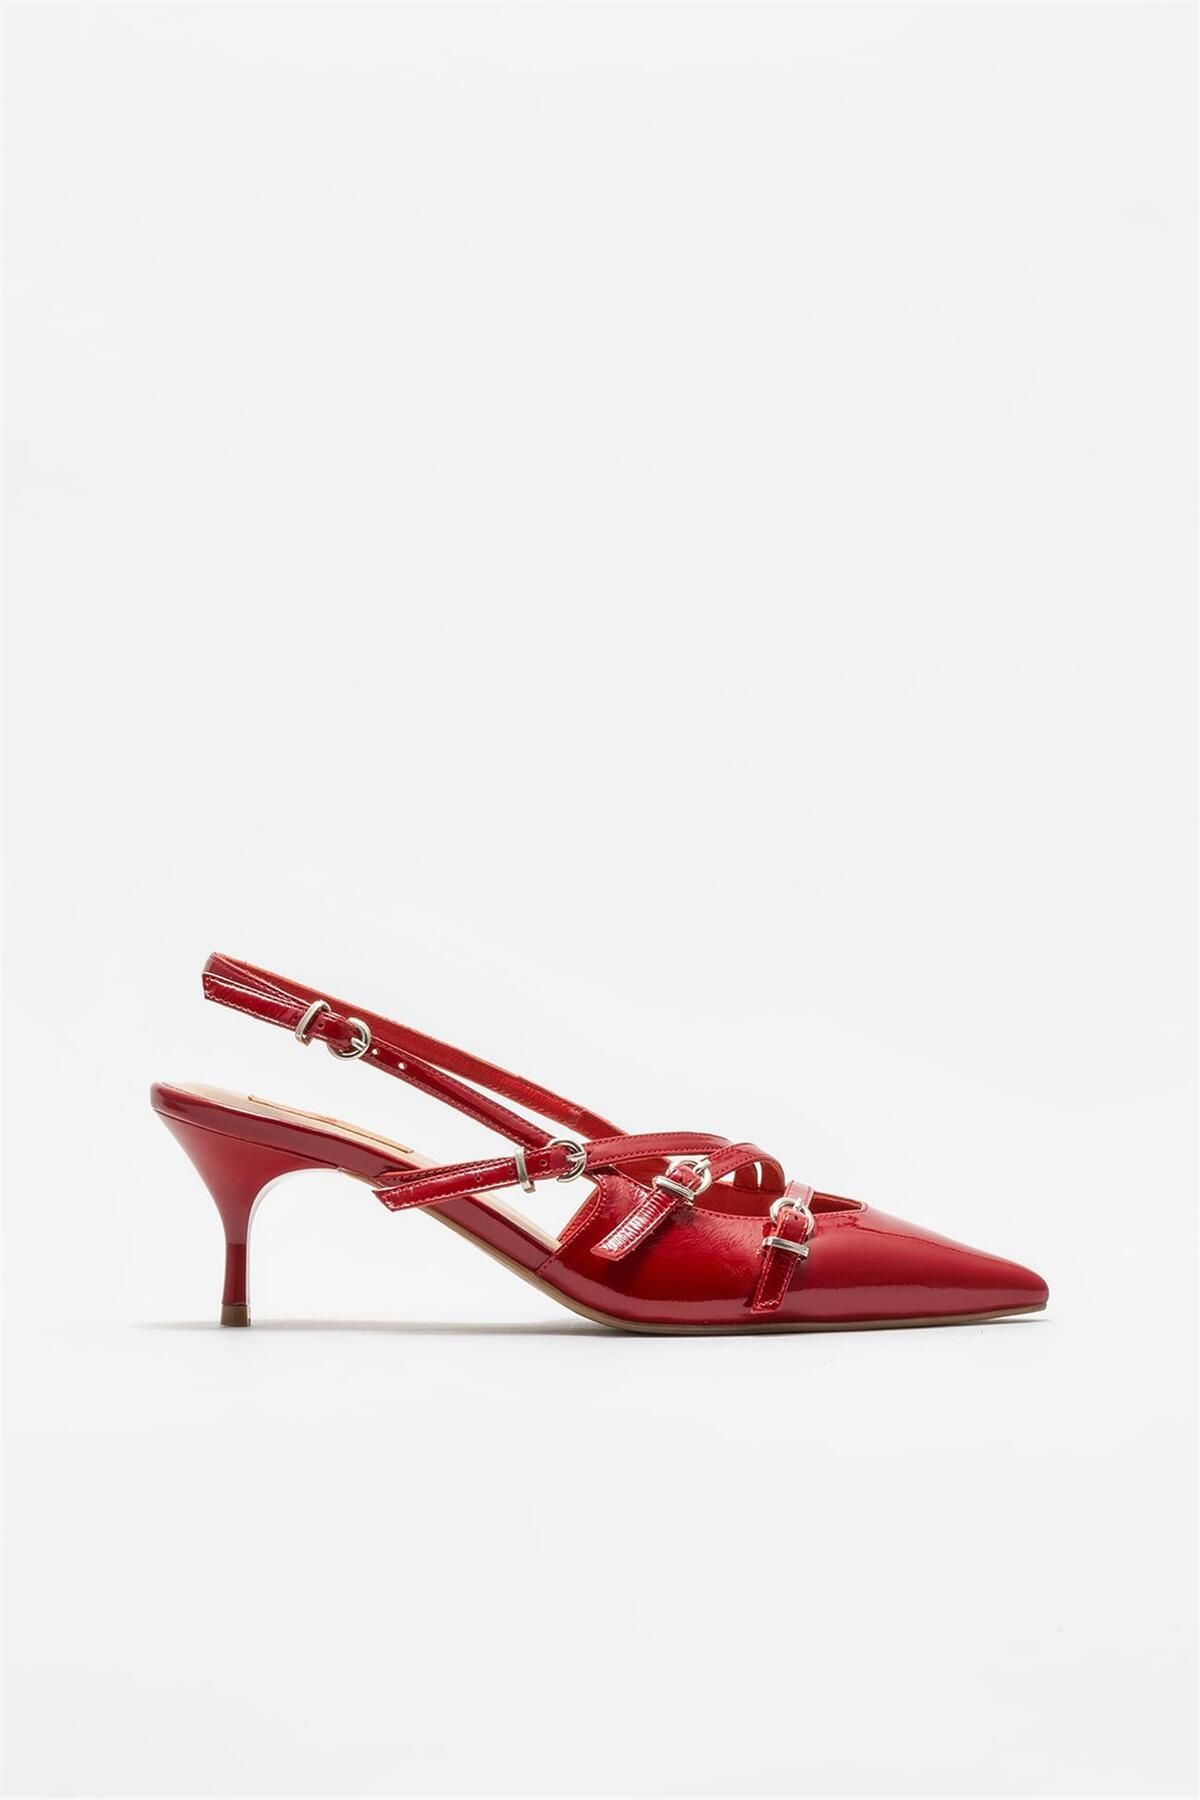 Elle Kırmızı Deri Kadın Topuklu Ayakkabı